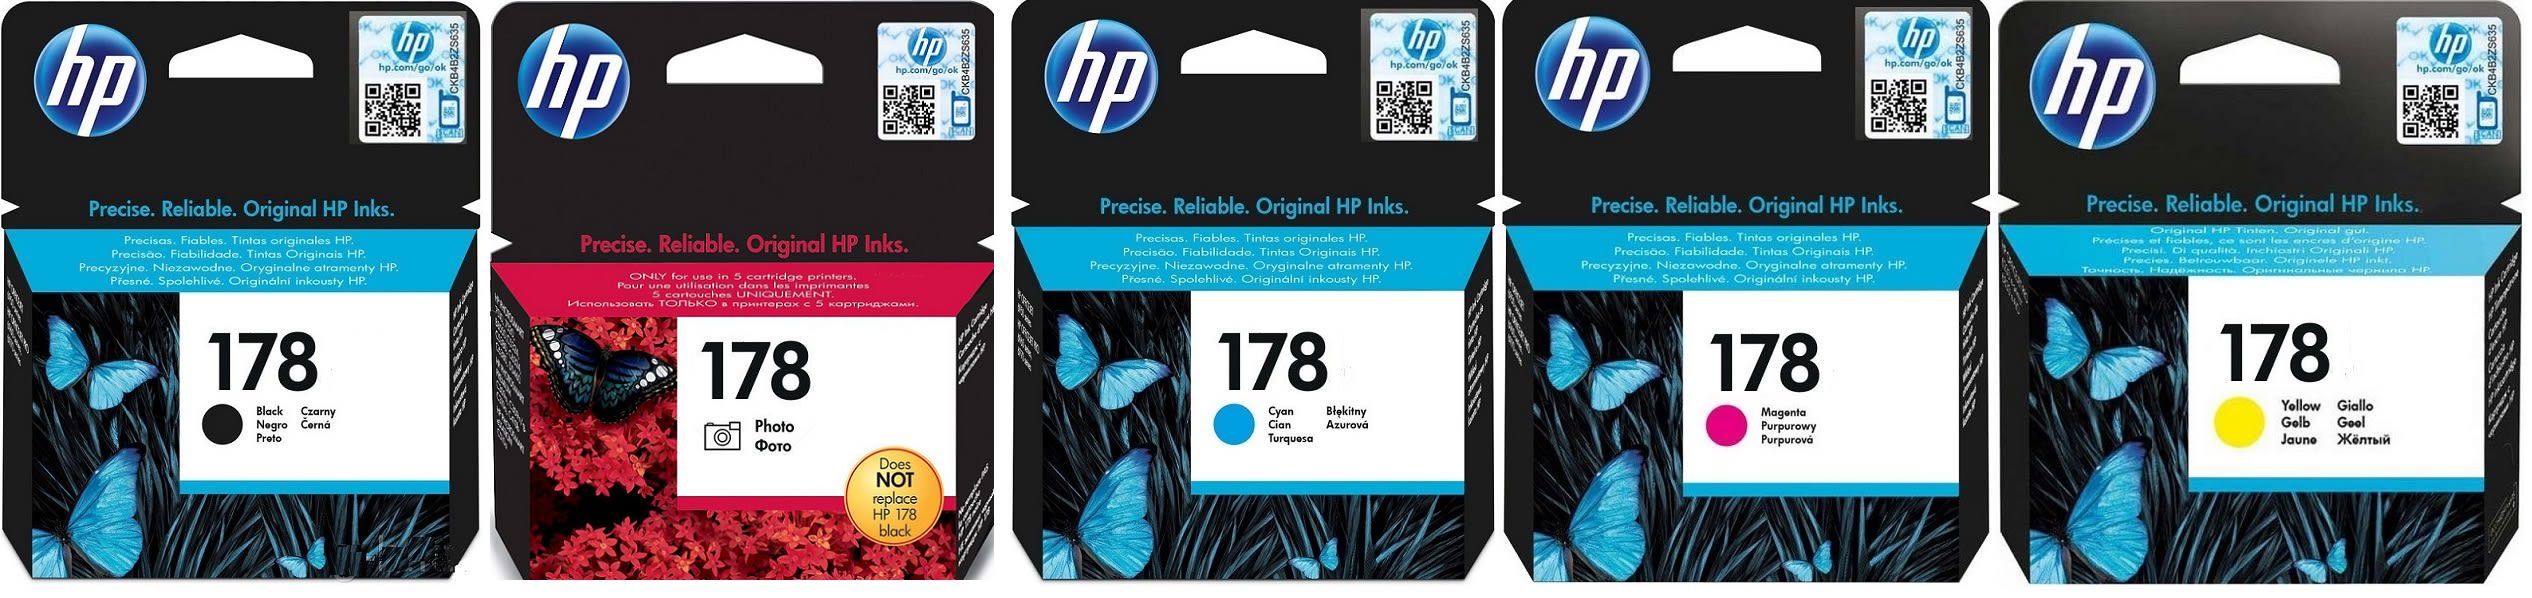 Картриджи hp 178 для HP Photosmart Premium AiO C310b. Купить комплект оригинальных картриджей.